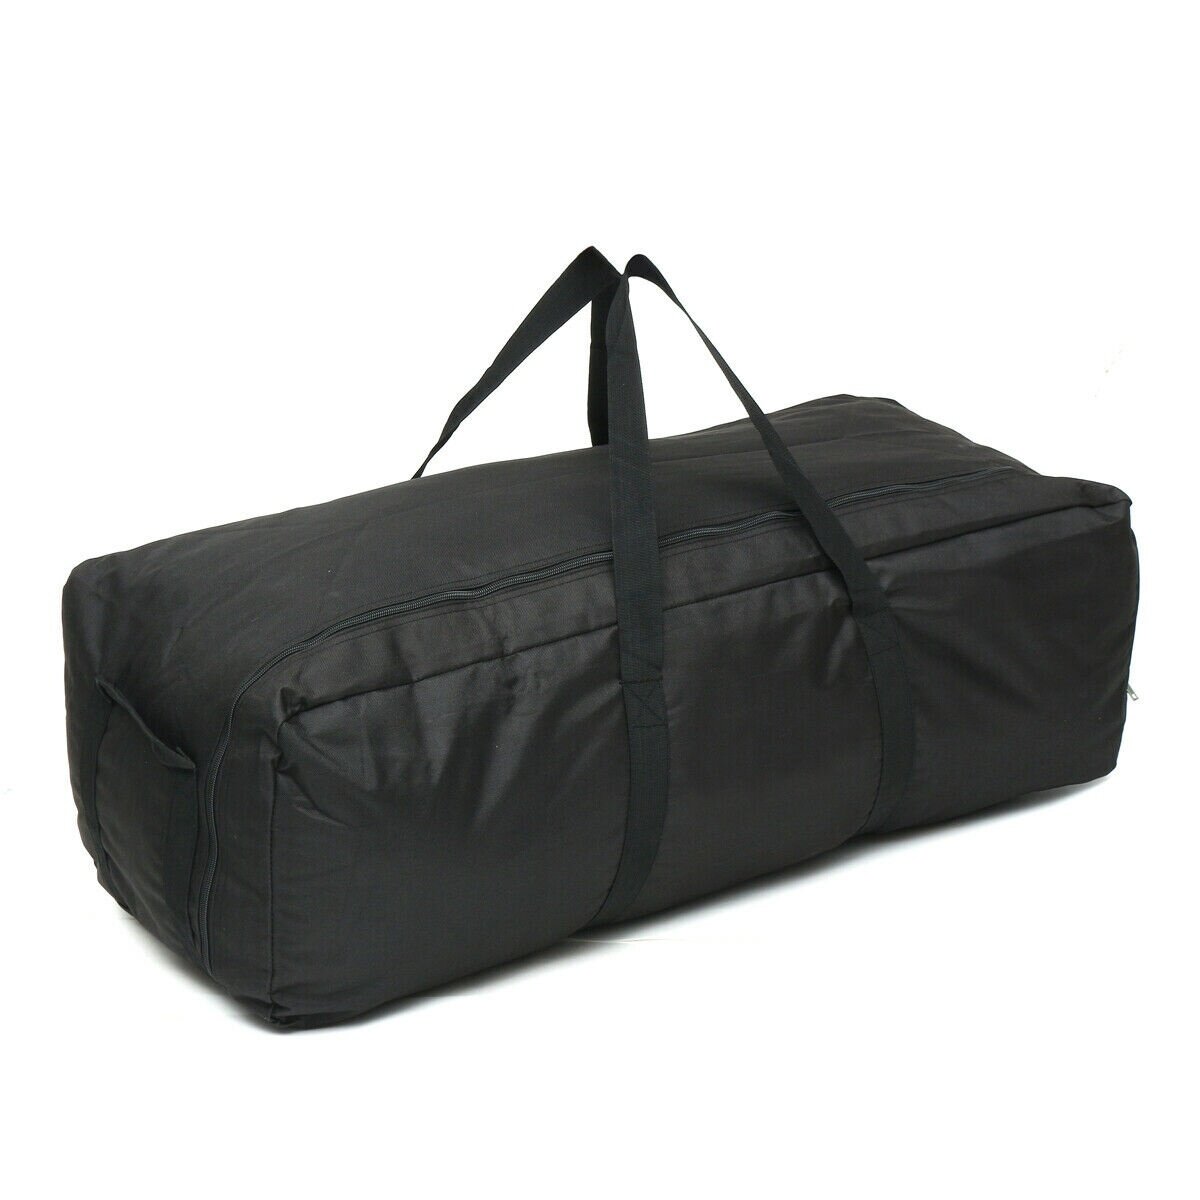 Gym Bag Outdoor Men's Black Large Capacity Duffle Travel Gym Weekend Overnight Bag Waterproof Sport 